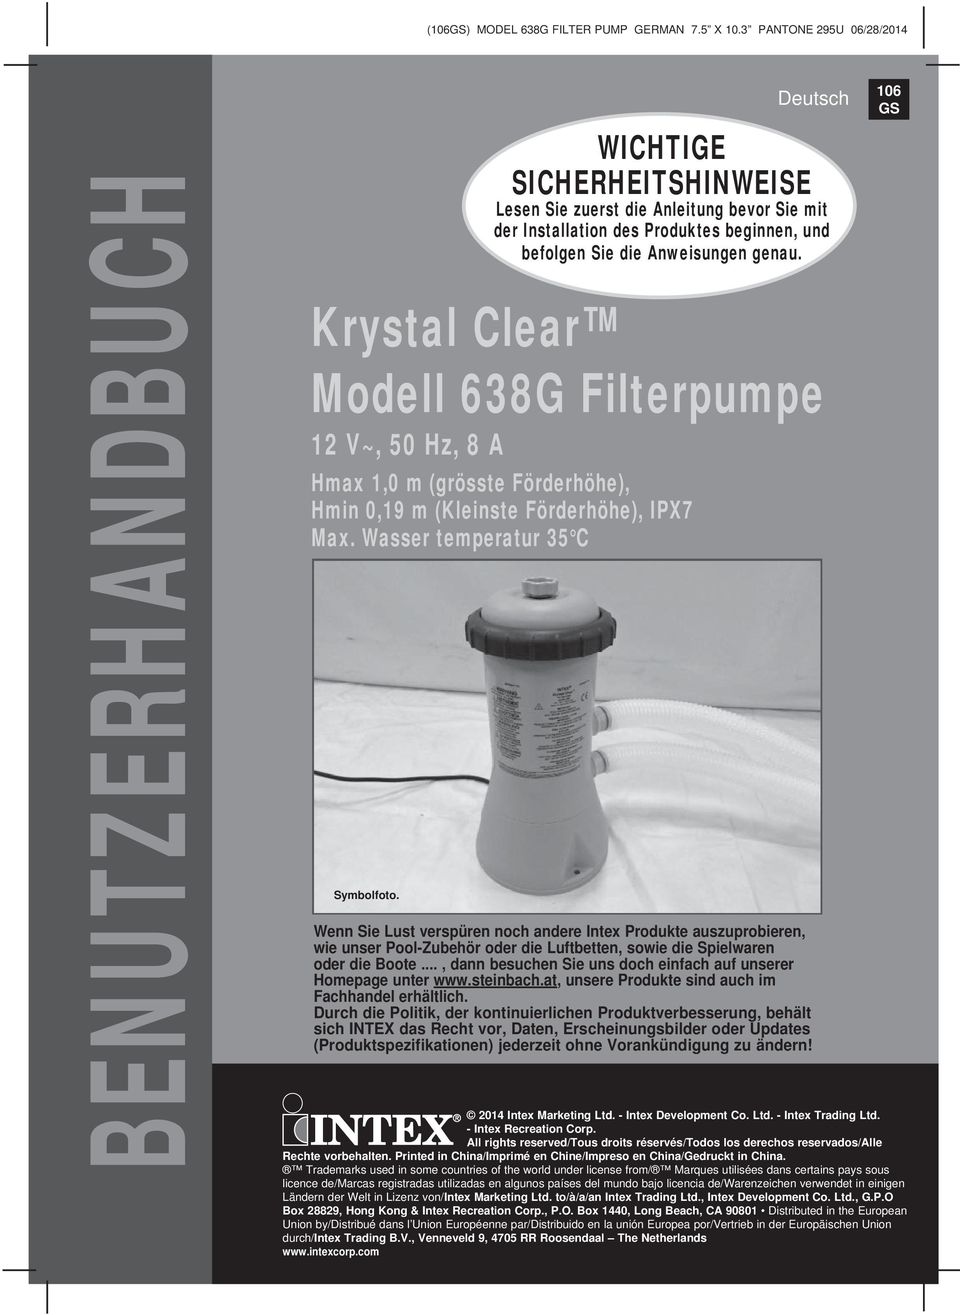 Krystal Clear Modell 638G Filterpumpe 12 V~, 50 Hz, 8 A Hmax 1,0 m (grösste Förderhöhe), Hmin 0,19 m (Kleinste Förderhöhe), IPX7 Max. Wasser temperatur 35 C Symbolfoto.